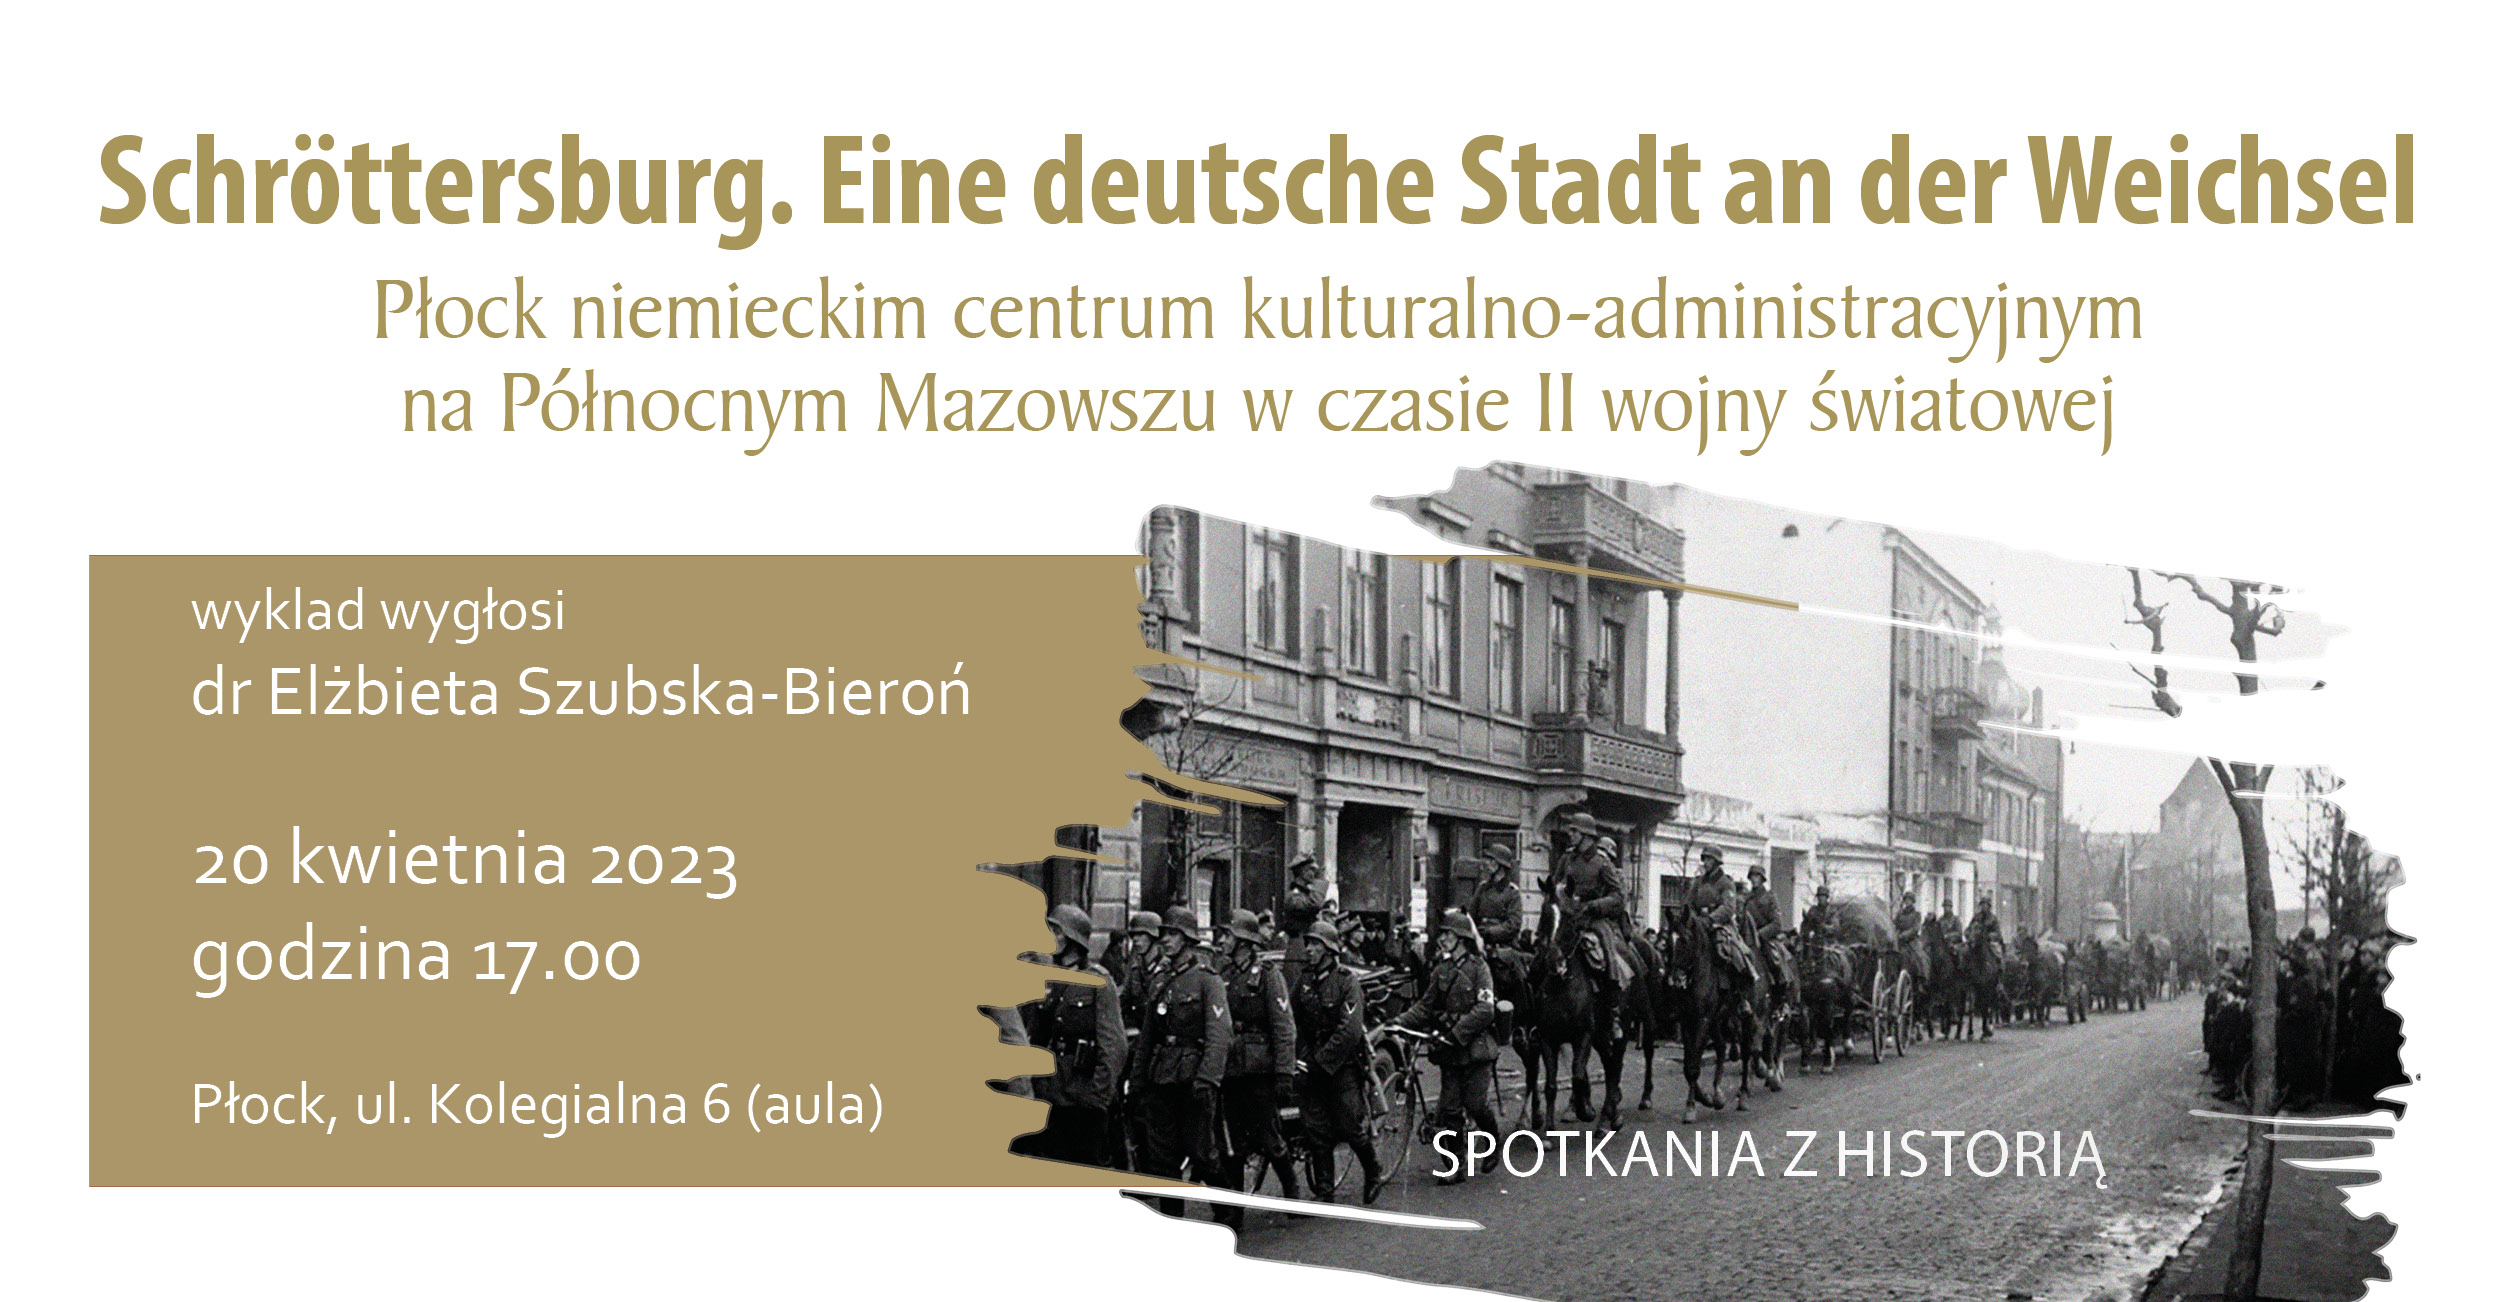 Grafika łącząca archiwalne zdjęcie wojsk niemieckich na ulicach Płocka wraz z tytułem i miejscem wykładu poświęconego II wojnie światowej zaplanowanego w muzeum na 20 kwietnia 2023 roku.